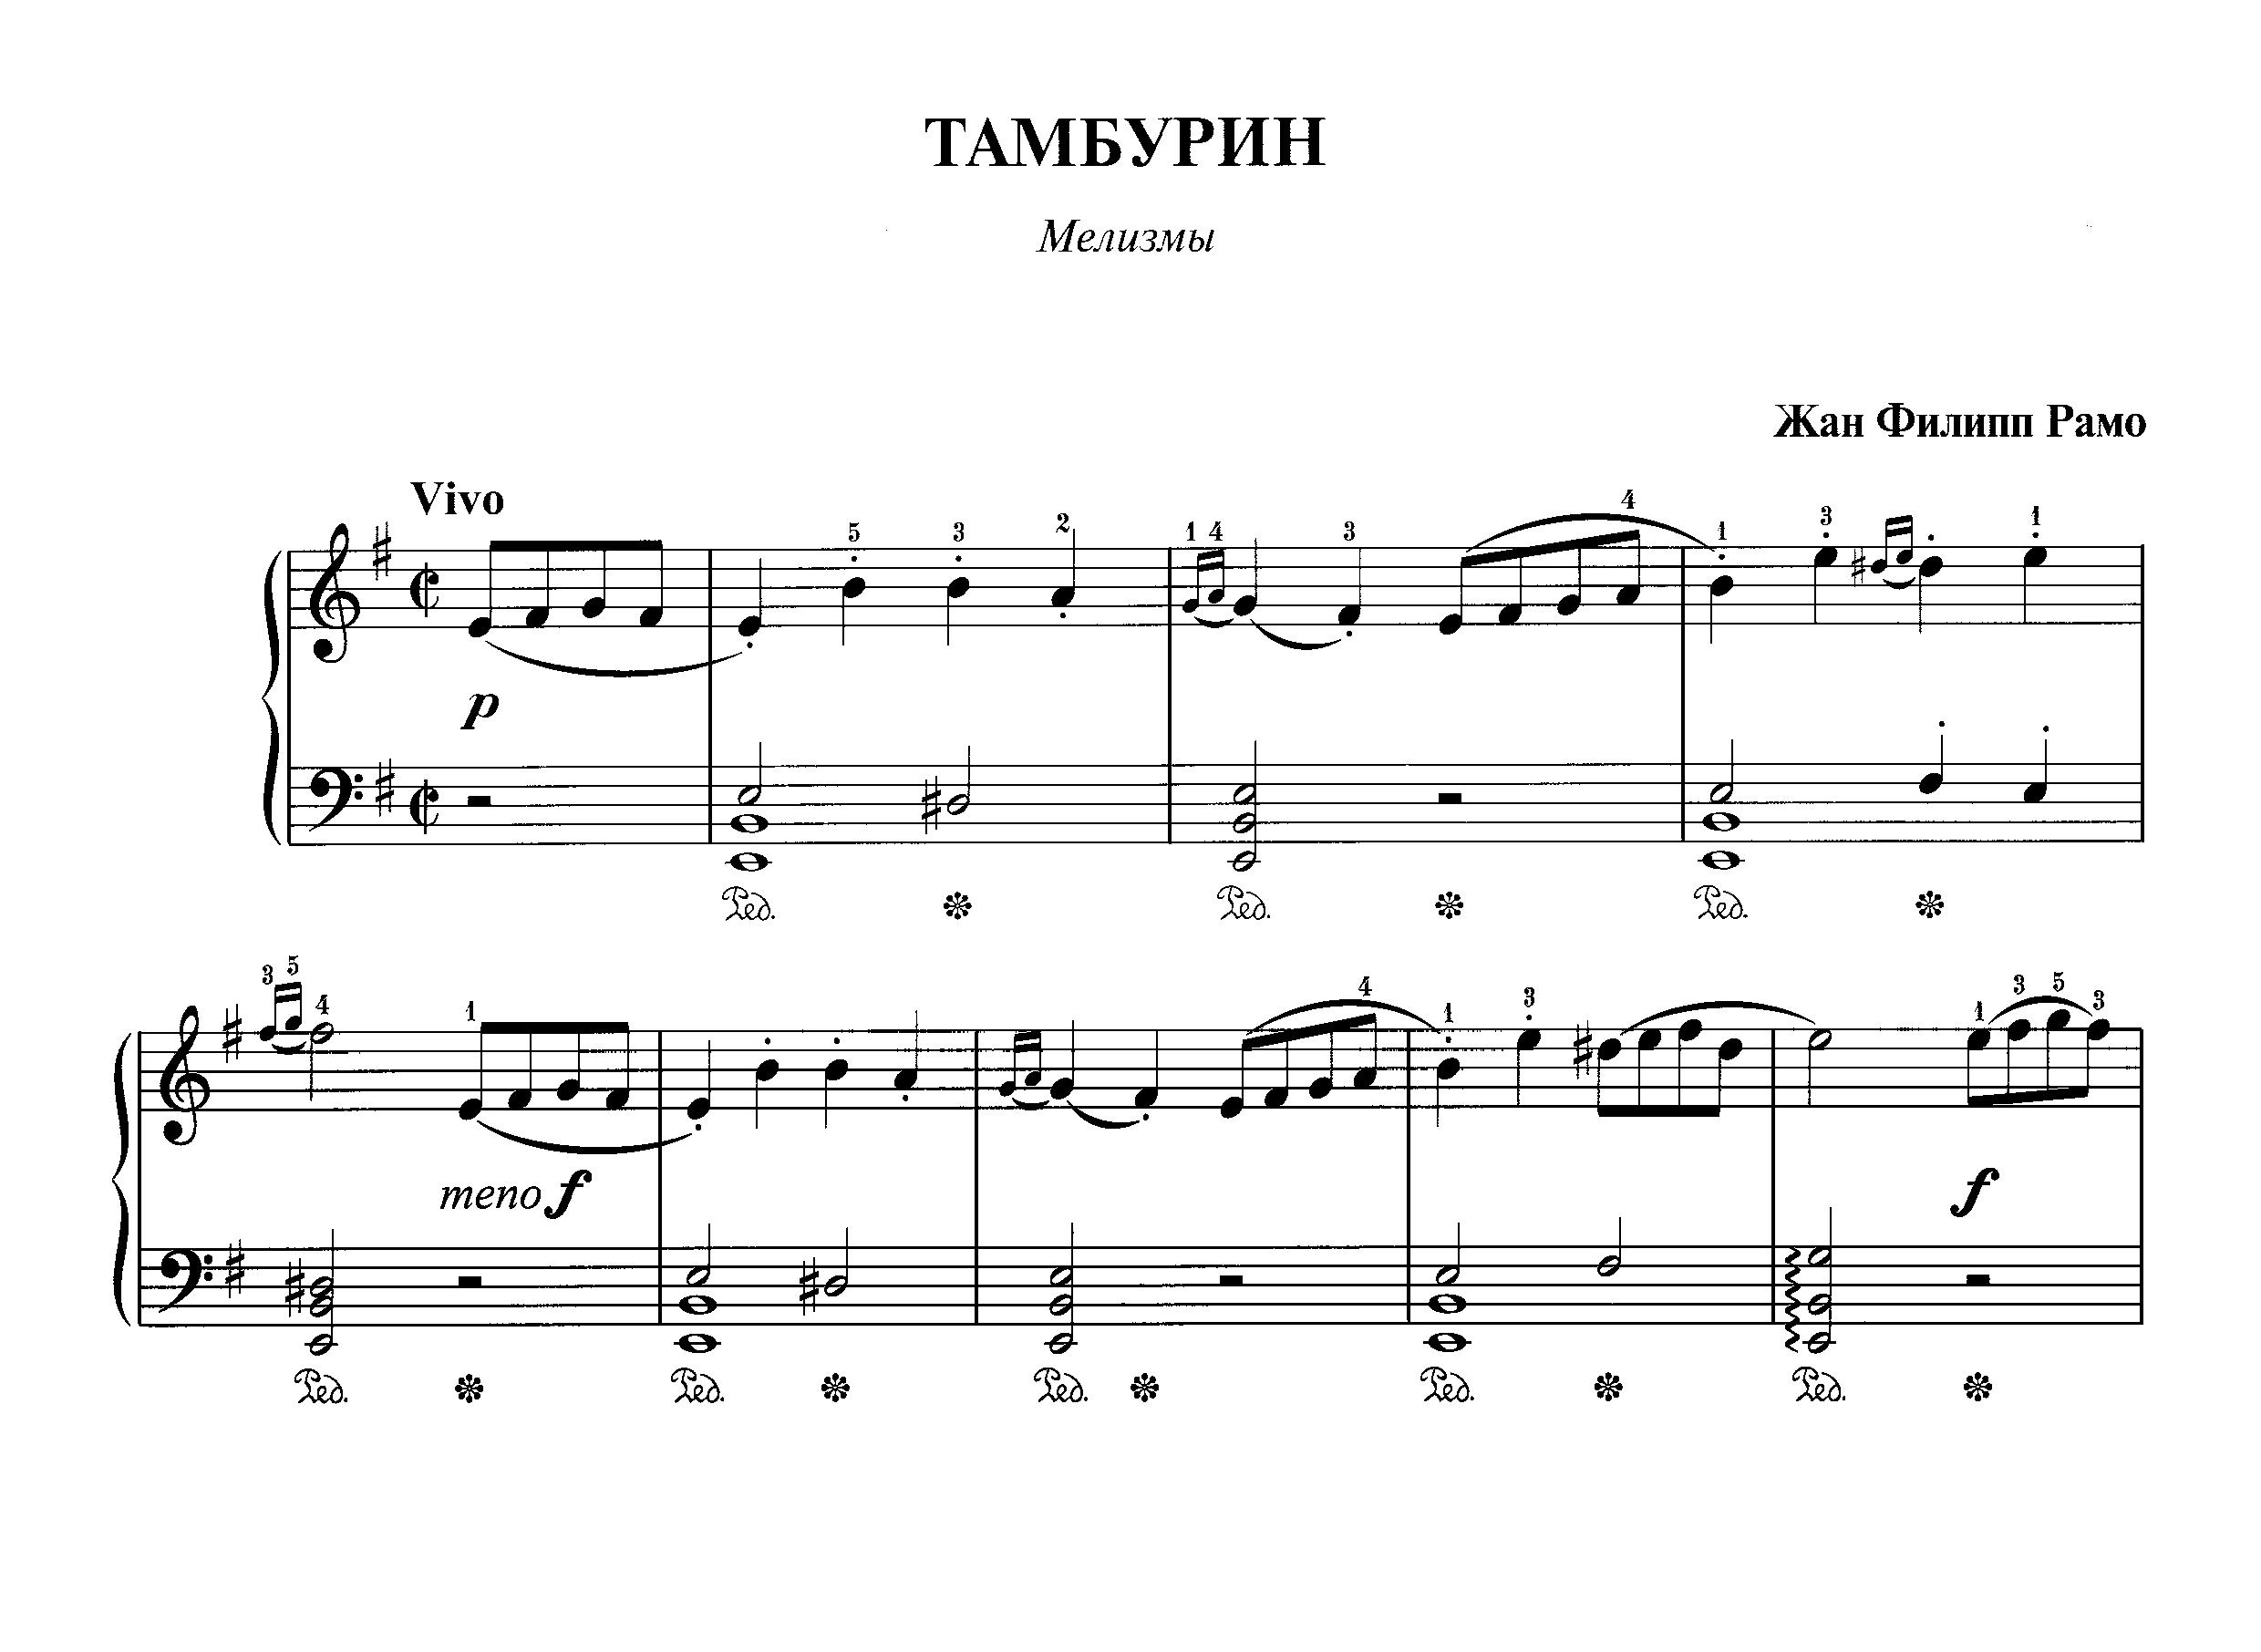 Рамо Ж.Ф. "Тамбурин" _ из сб. "Фортепианная техника в удовольствие" [6 класс]